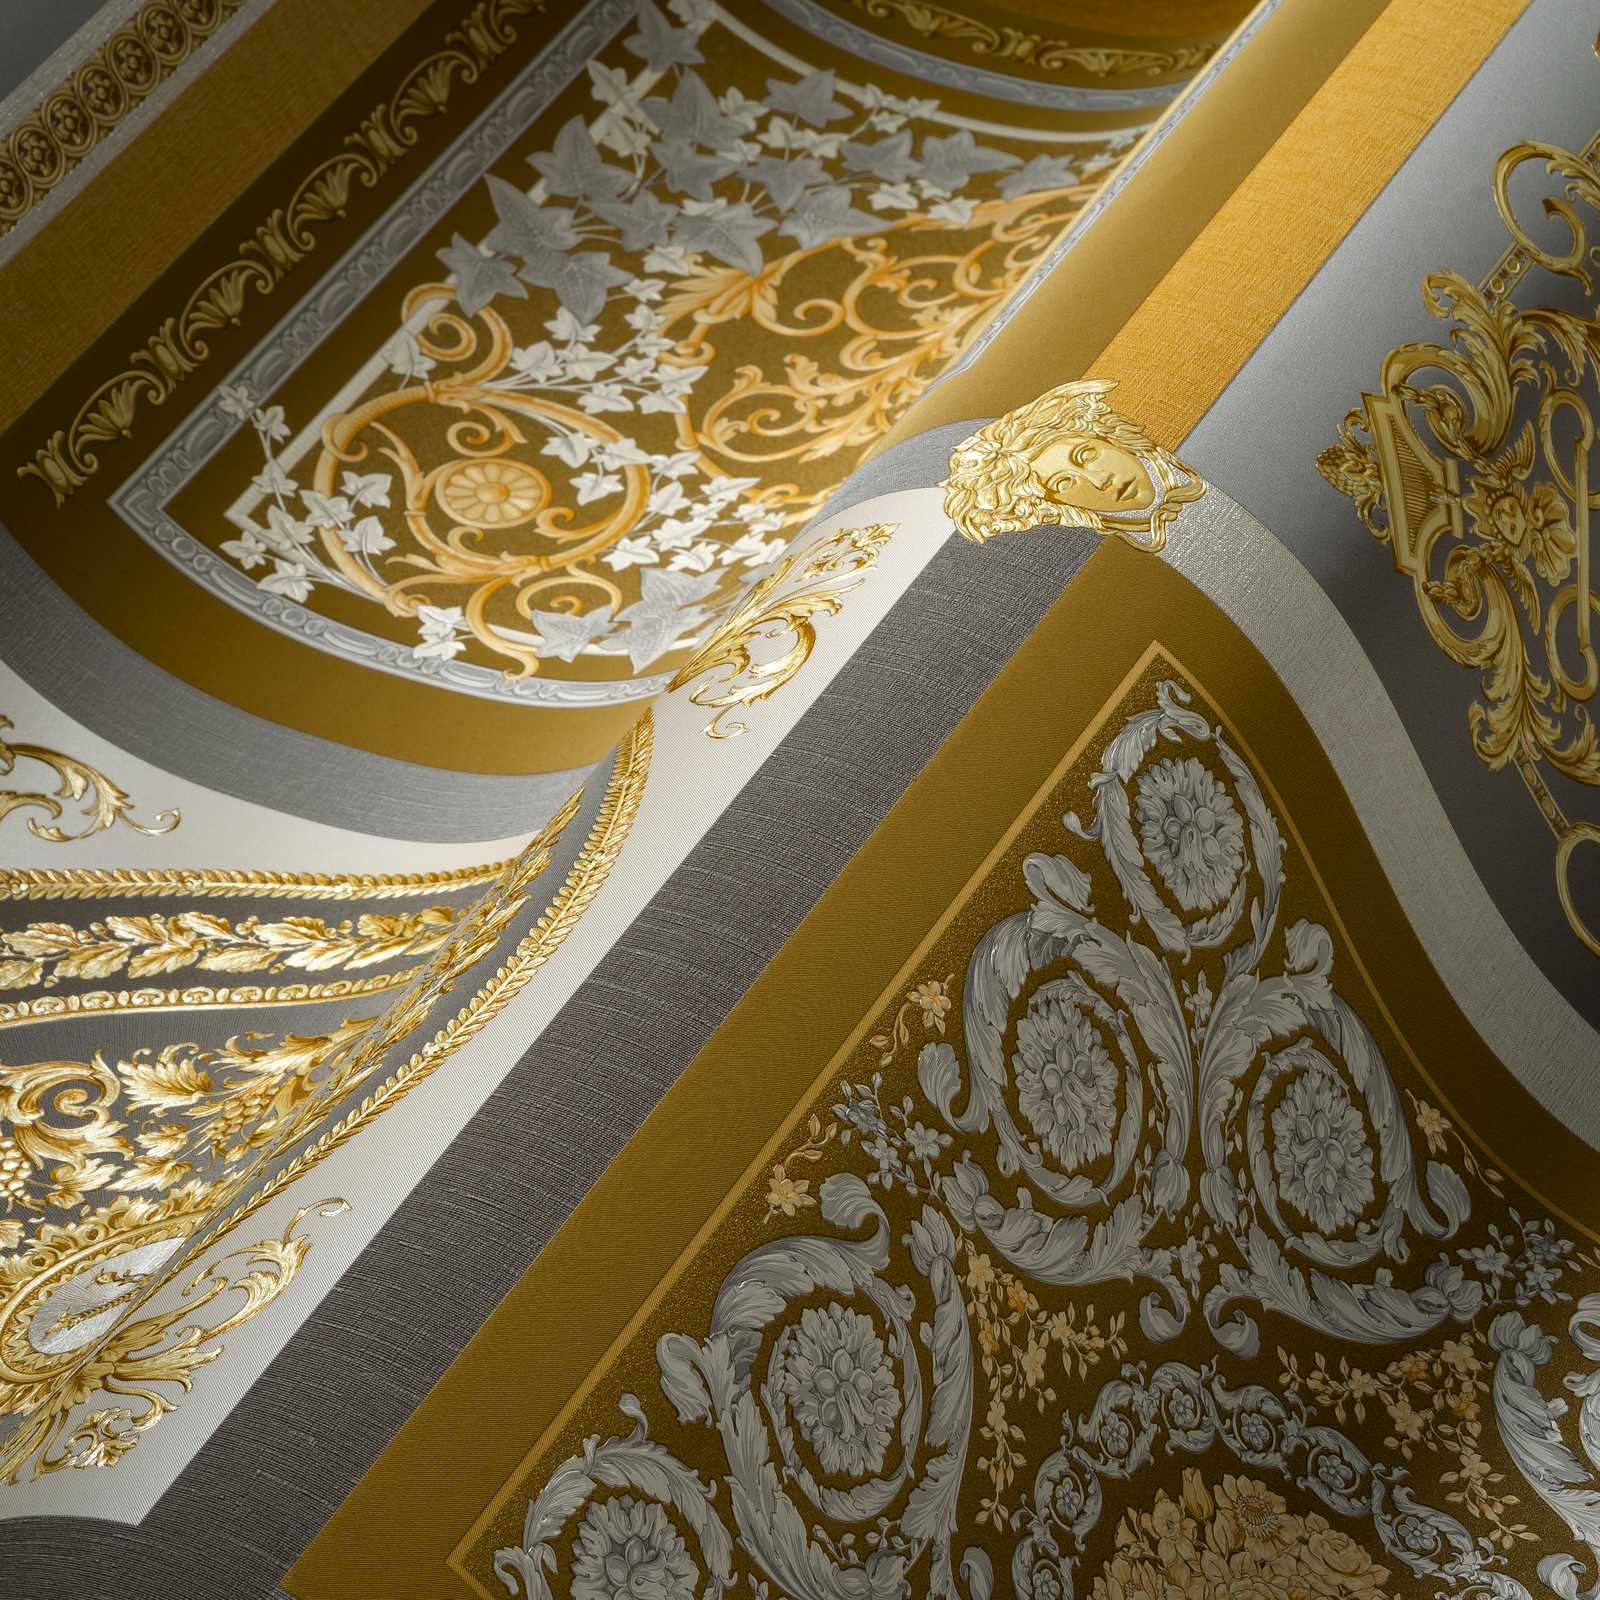             Metallic VERSACE Tapete mit Ornamentdesign, Gold und Silber
        